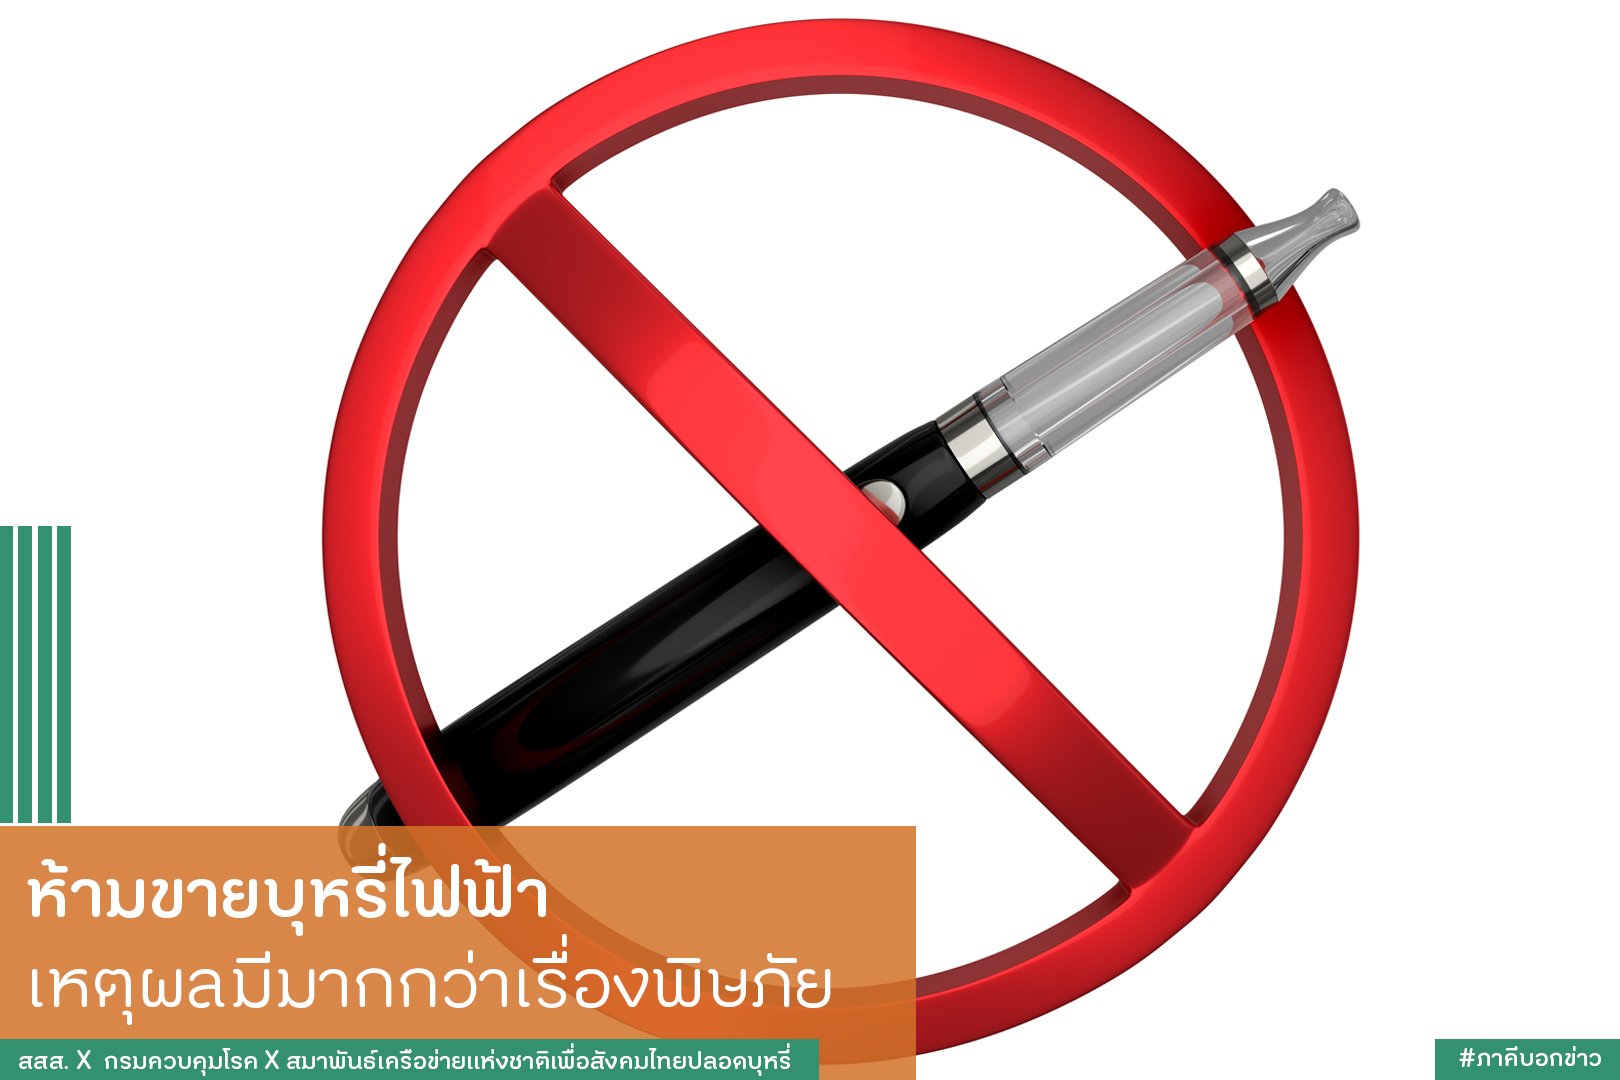 ห้ามขายบุหรี่ไฟฟ้า เหตุผลมีมากกว่าเรื่องพิษภัย  thaihealth